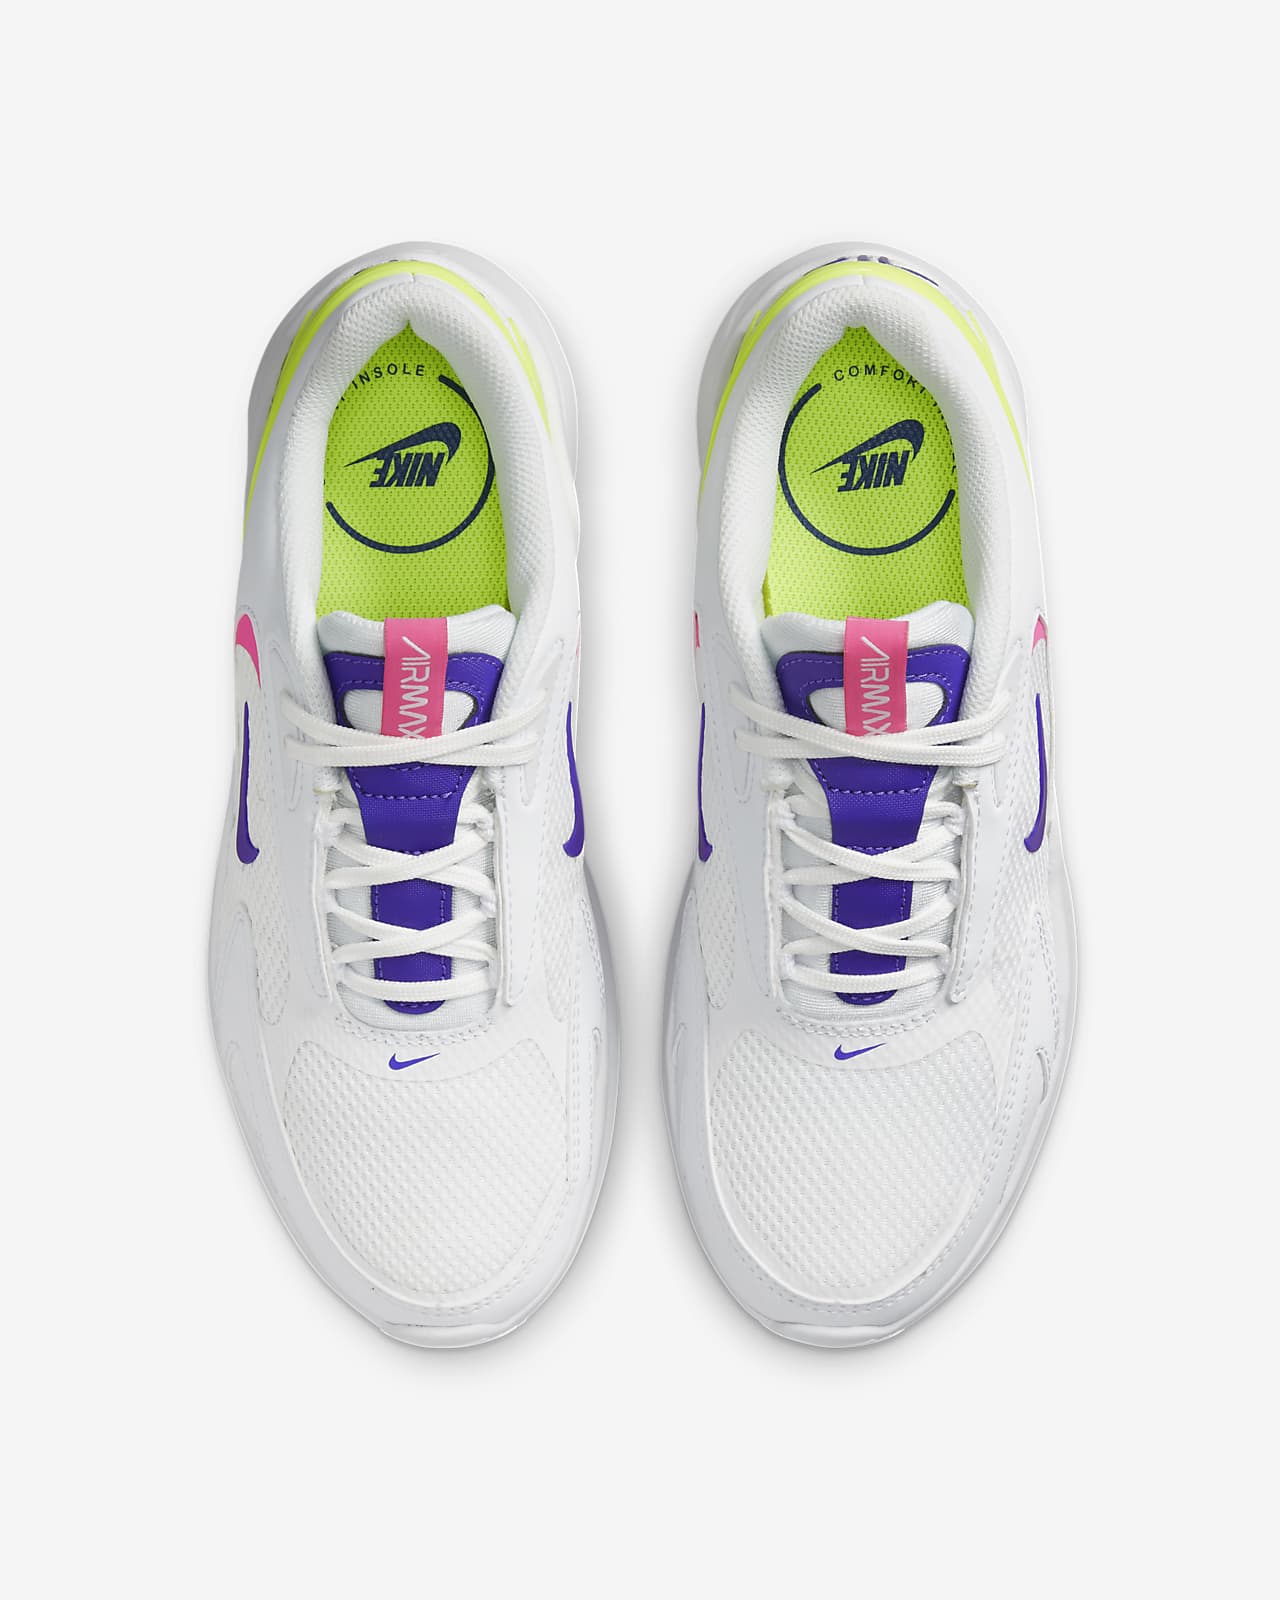 zo veel Voorgevoel knuffel Nike Air Max Bolt Women's Shoes. Nike LU